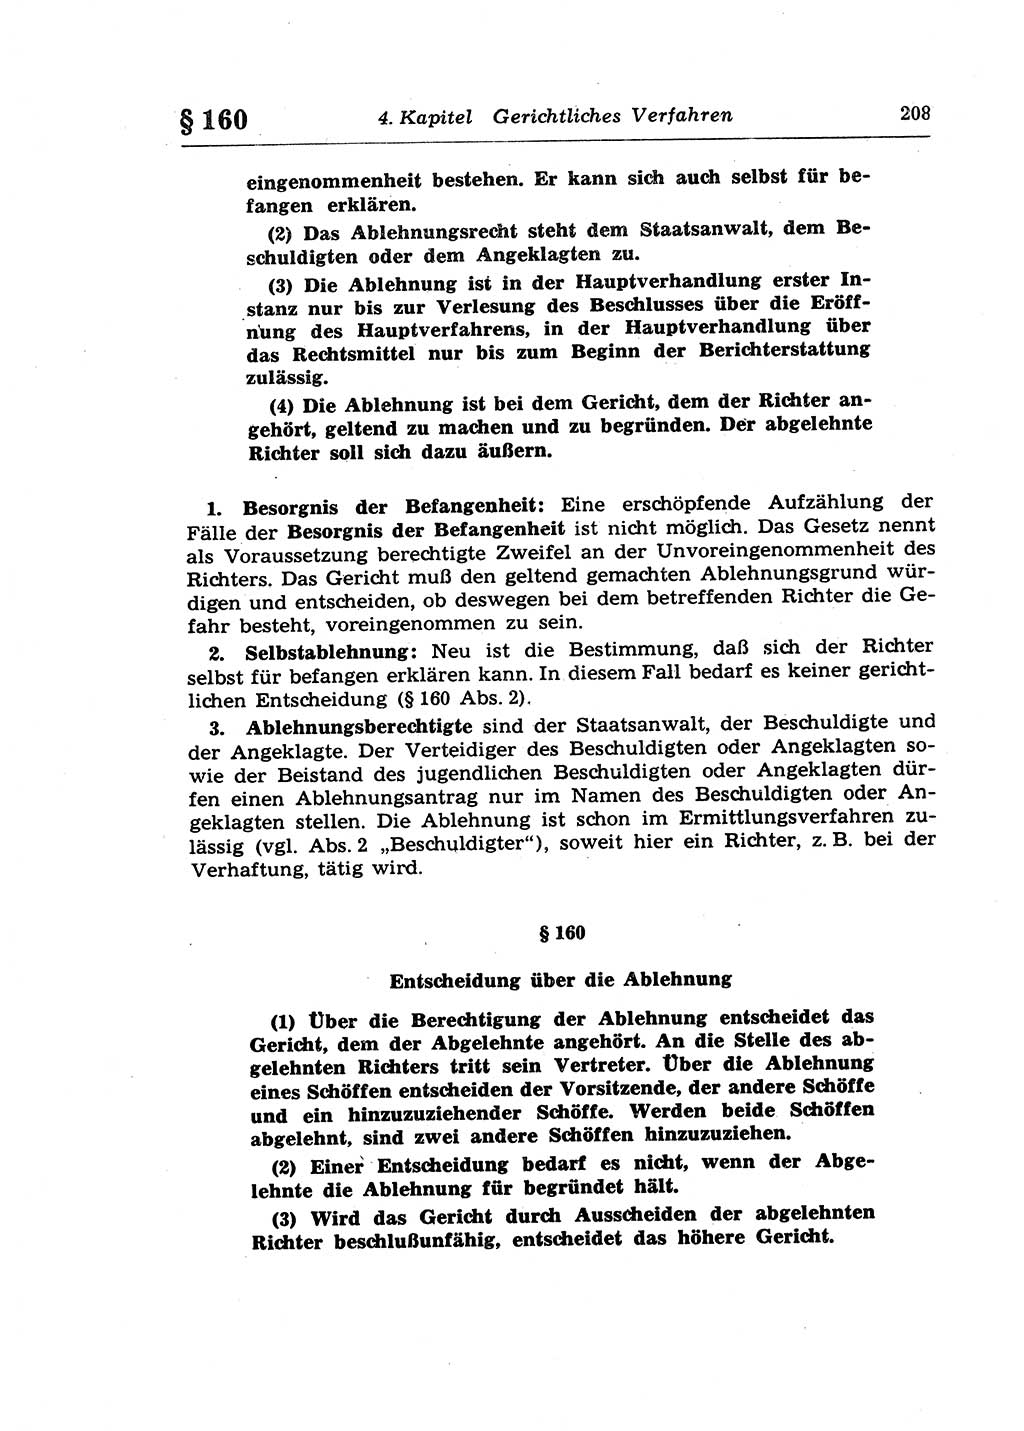 Strafprozeßrecht der DDR (Deutsche Demokratische Republik), Lehrkommentar zur Strafprozeßordnung (StPO) 1968, Seite 208 (Strafprozeßr. DDR Lehrkomm. StPO 19688, S. 208)